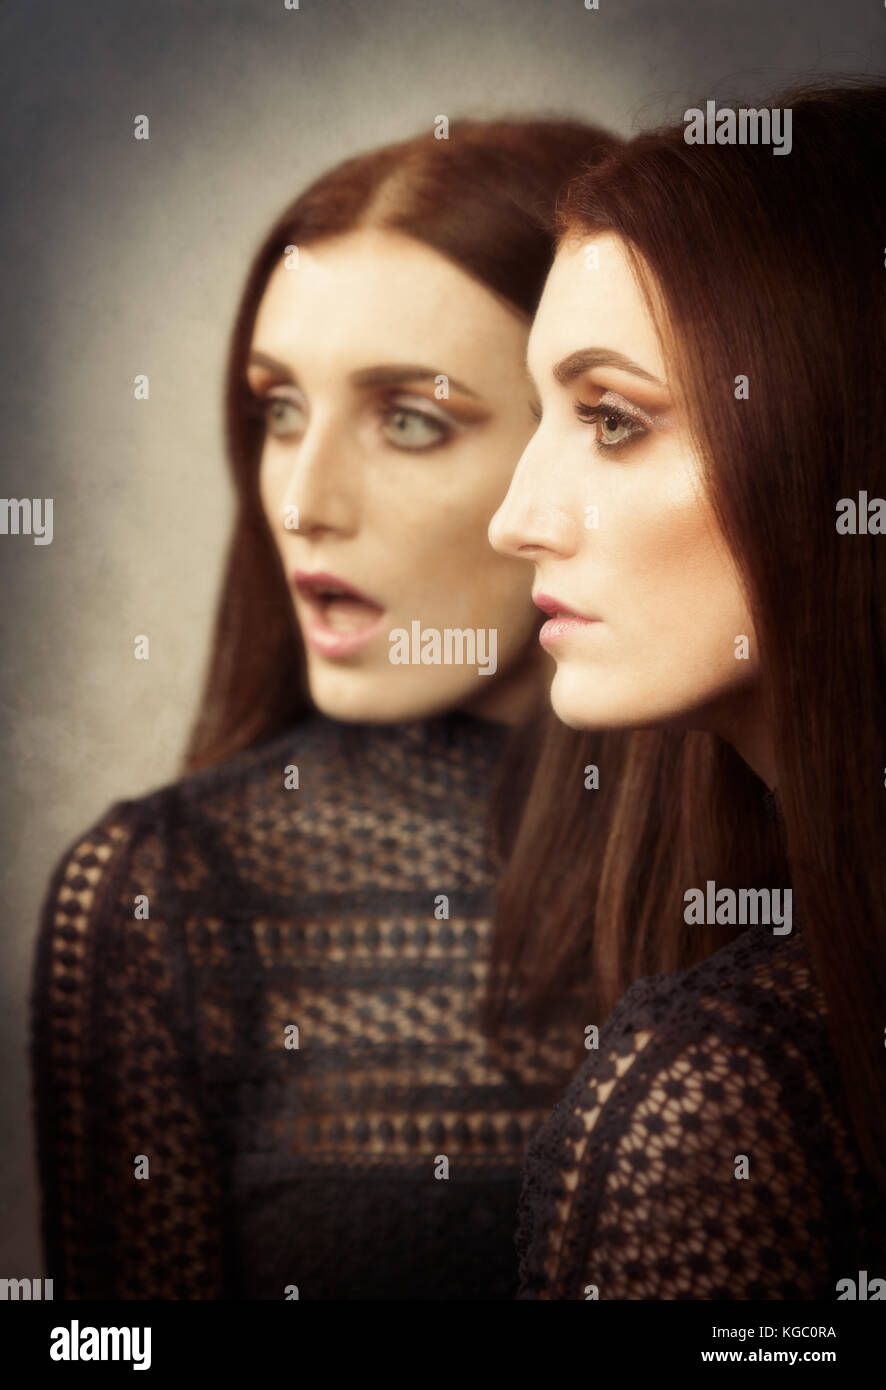 Lo specchio ha due facce immagini e fotografie stock ad alta risoluzione -  Alamy